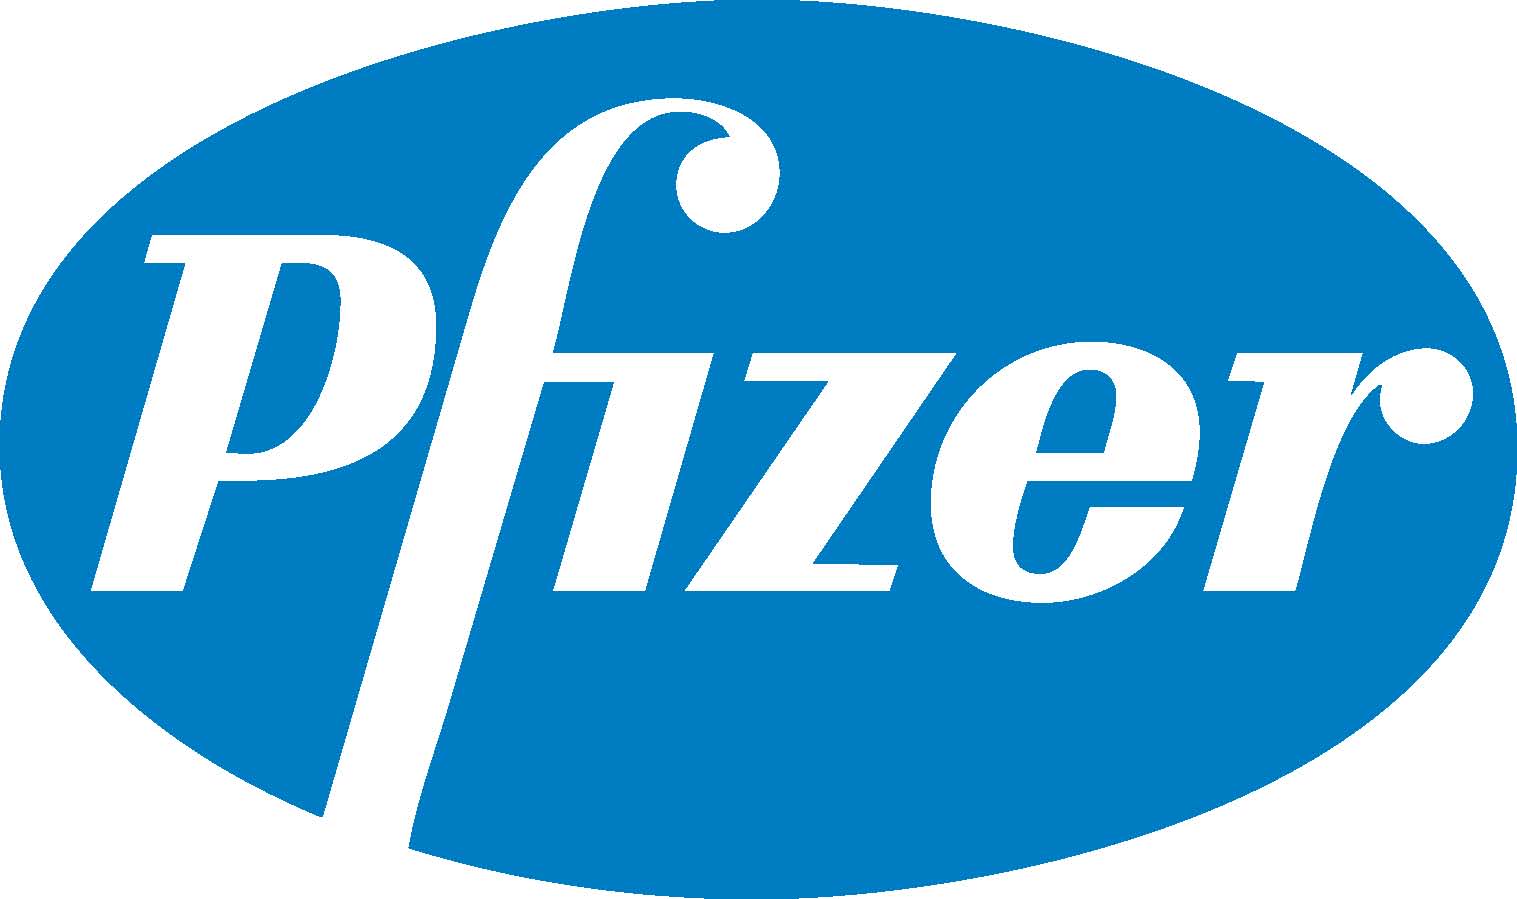 Imagen de la empresa Pfizer a la que se le ofrecen los descuentos